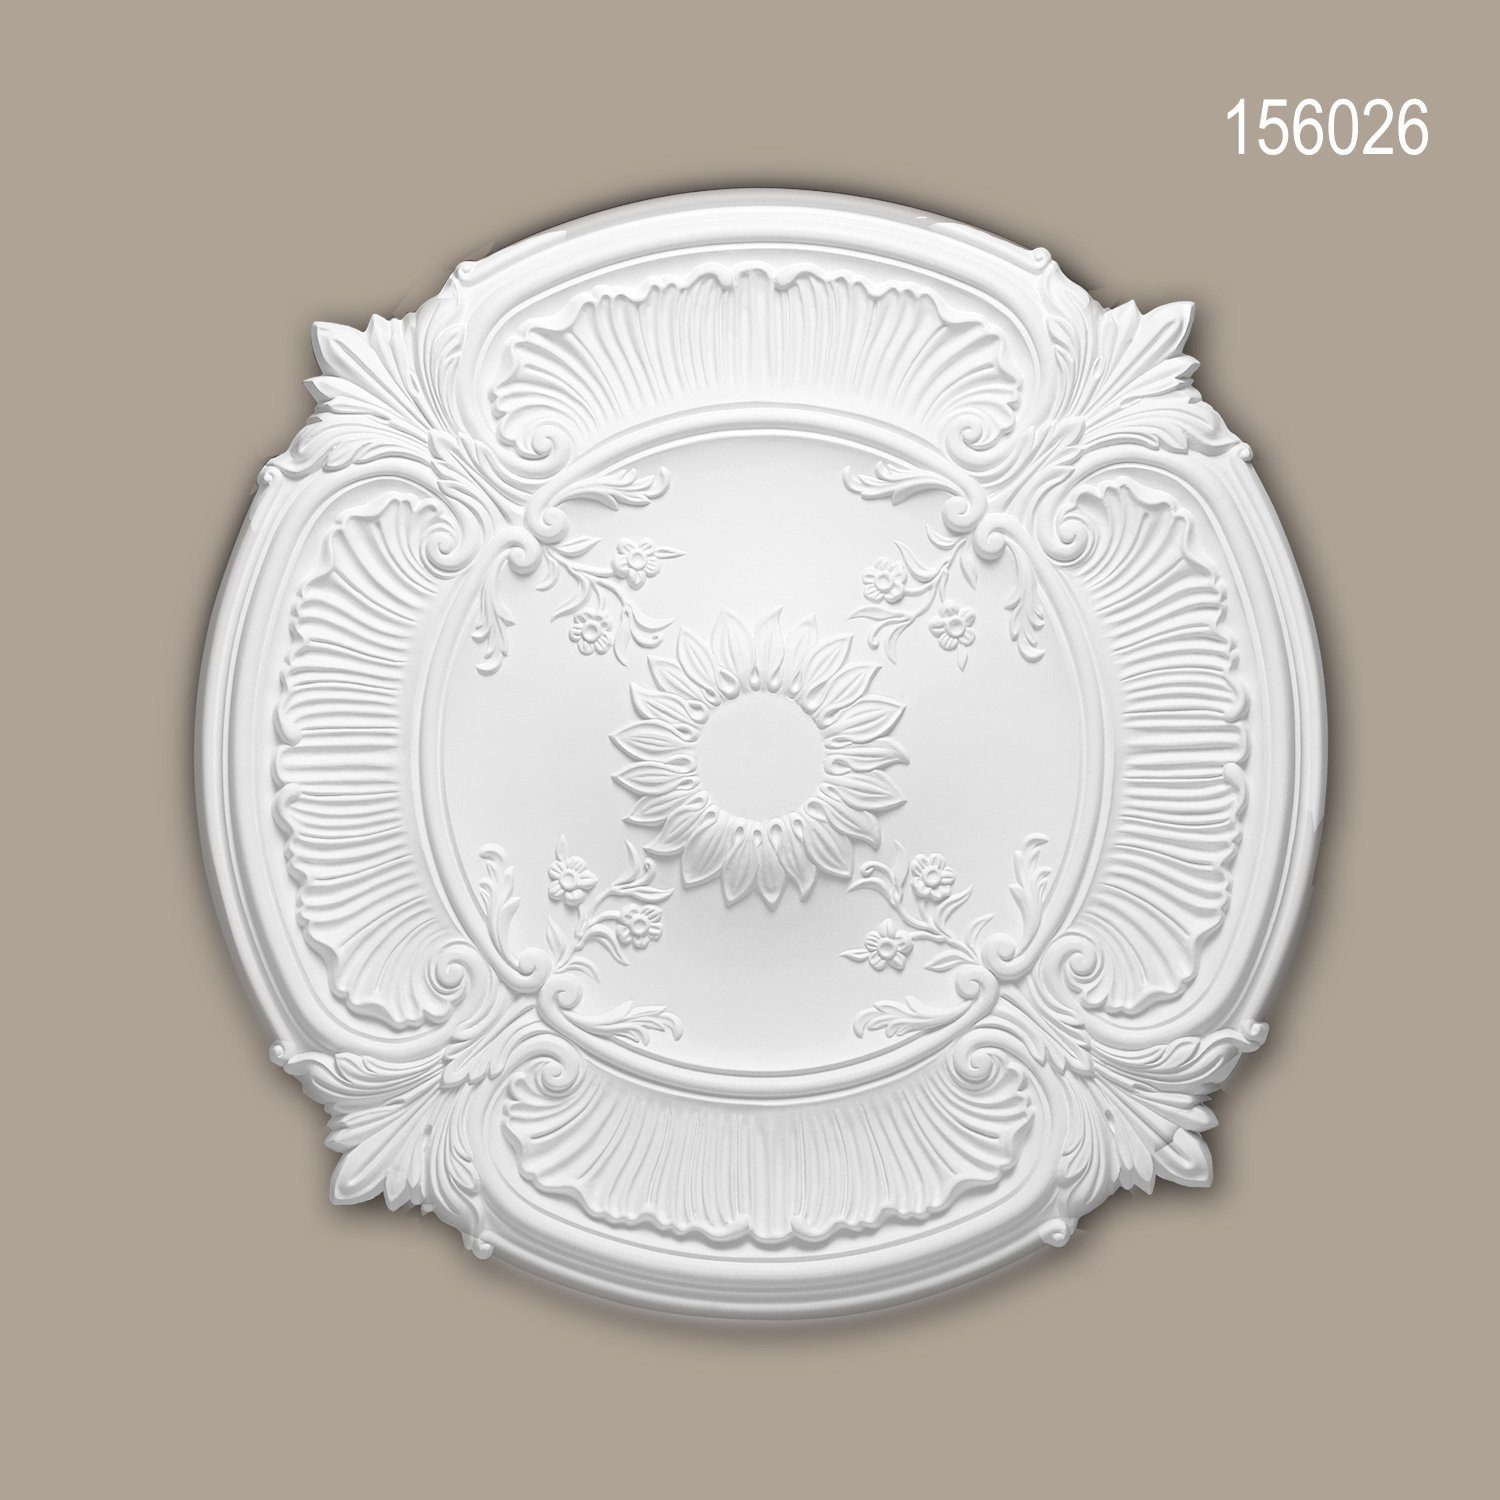 1 Medallion, (Rosette, 77 Durchmesser Decken-Rosette Neo-Renaissance St., Stuckrosette, Deckenelement, 156026 Stil: vorgrundiert, Profhome weiß, Deckenrosette, cm), Zierelement,